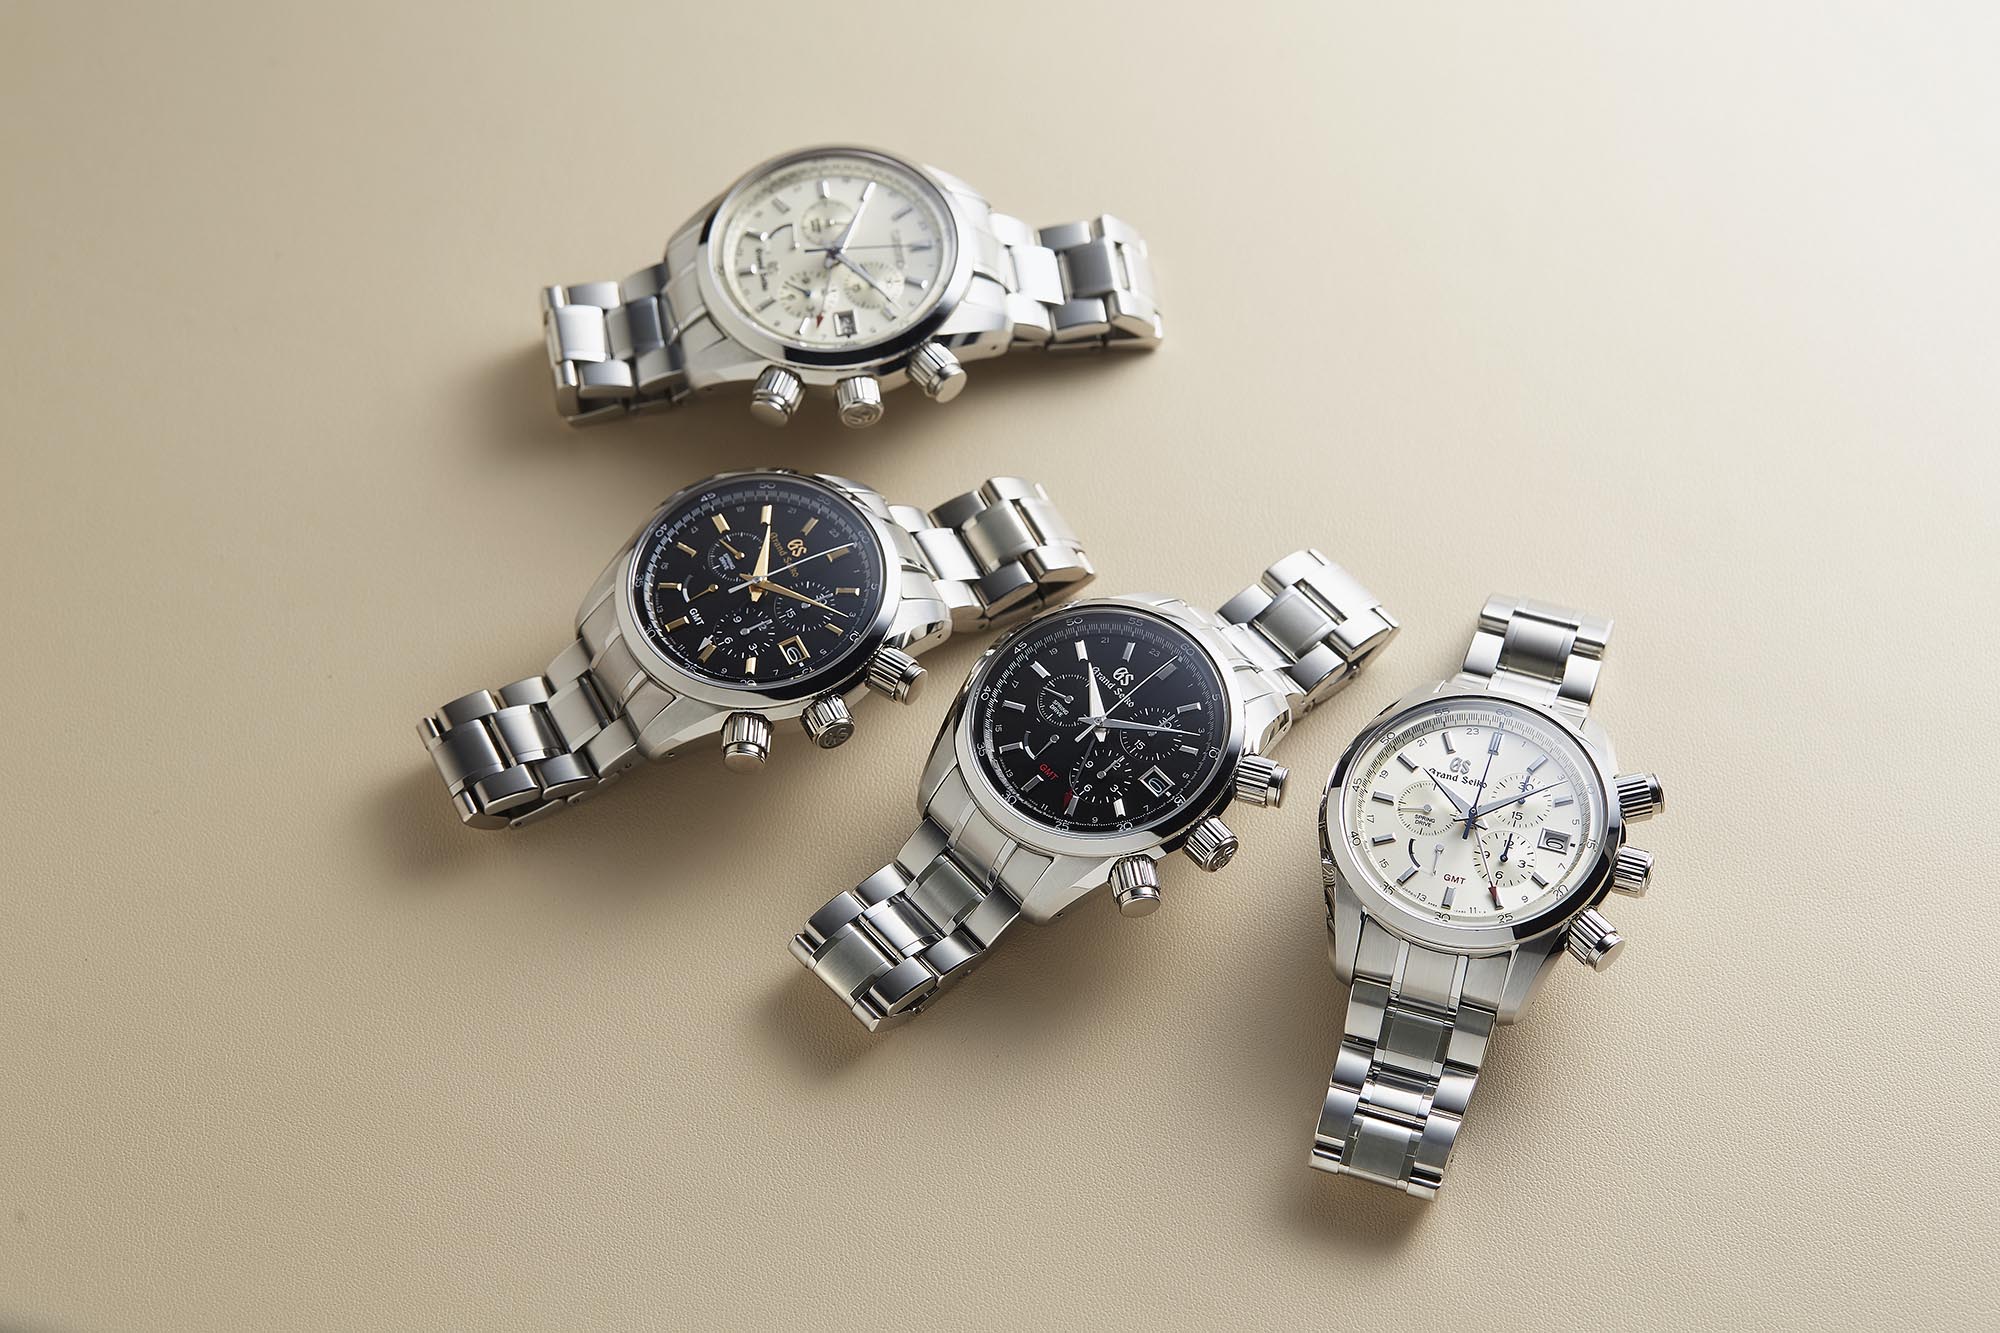 Four Grand Seiko chronographs on beige surface